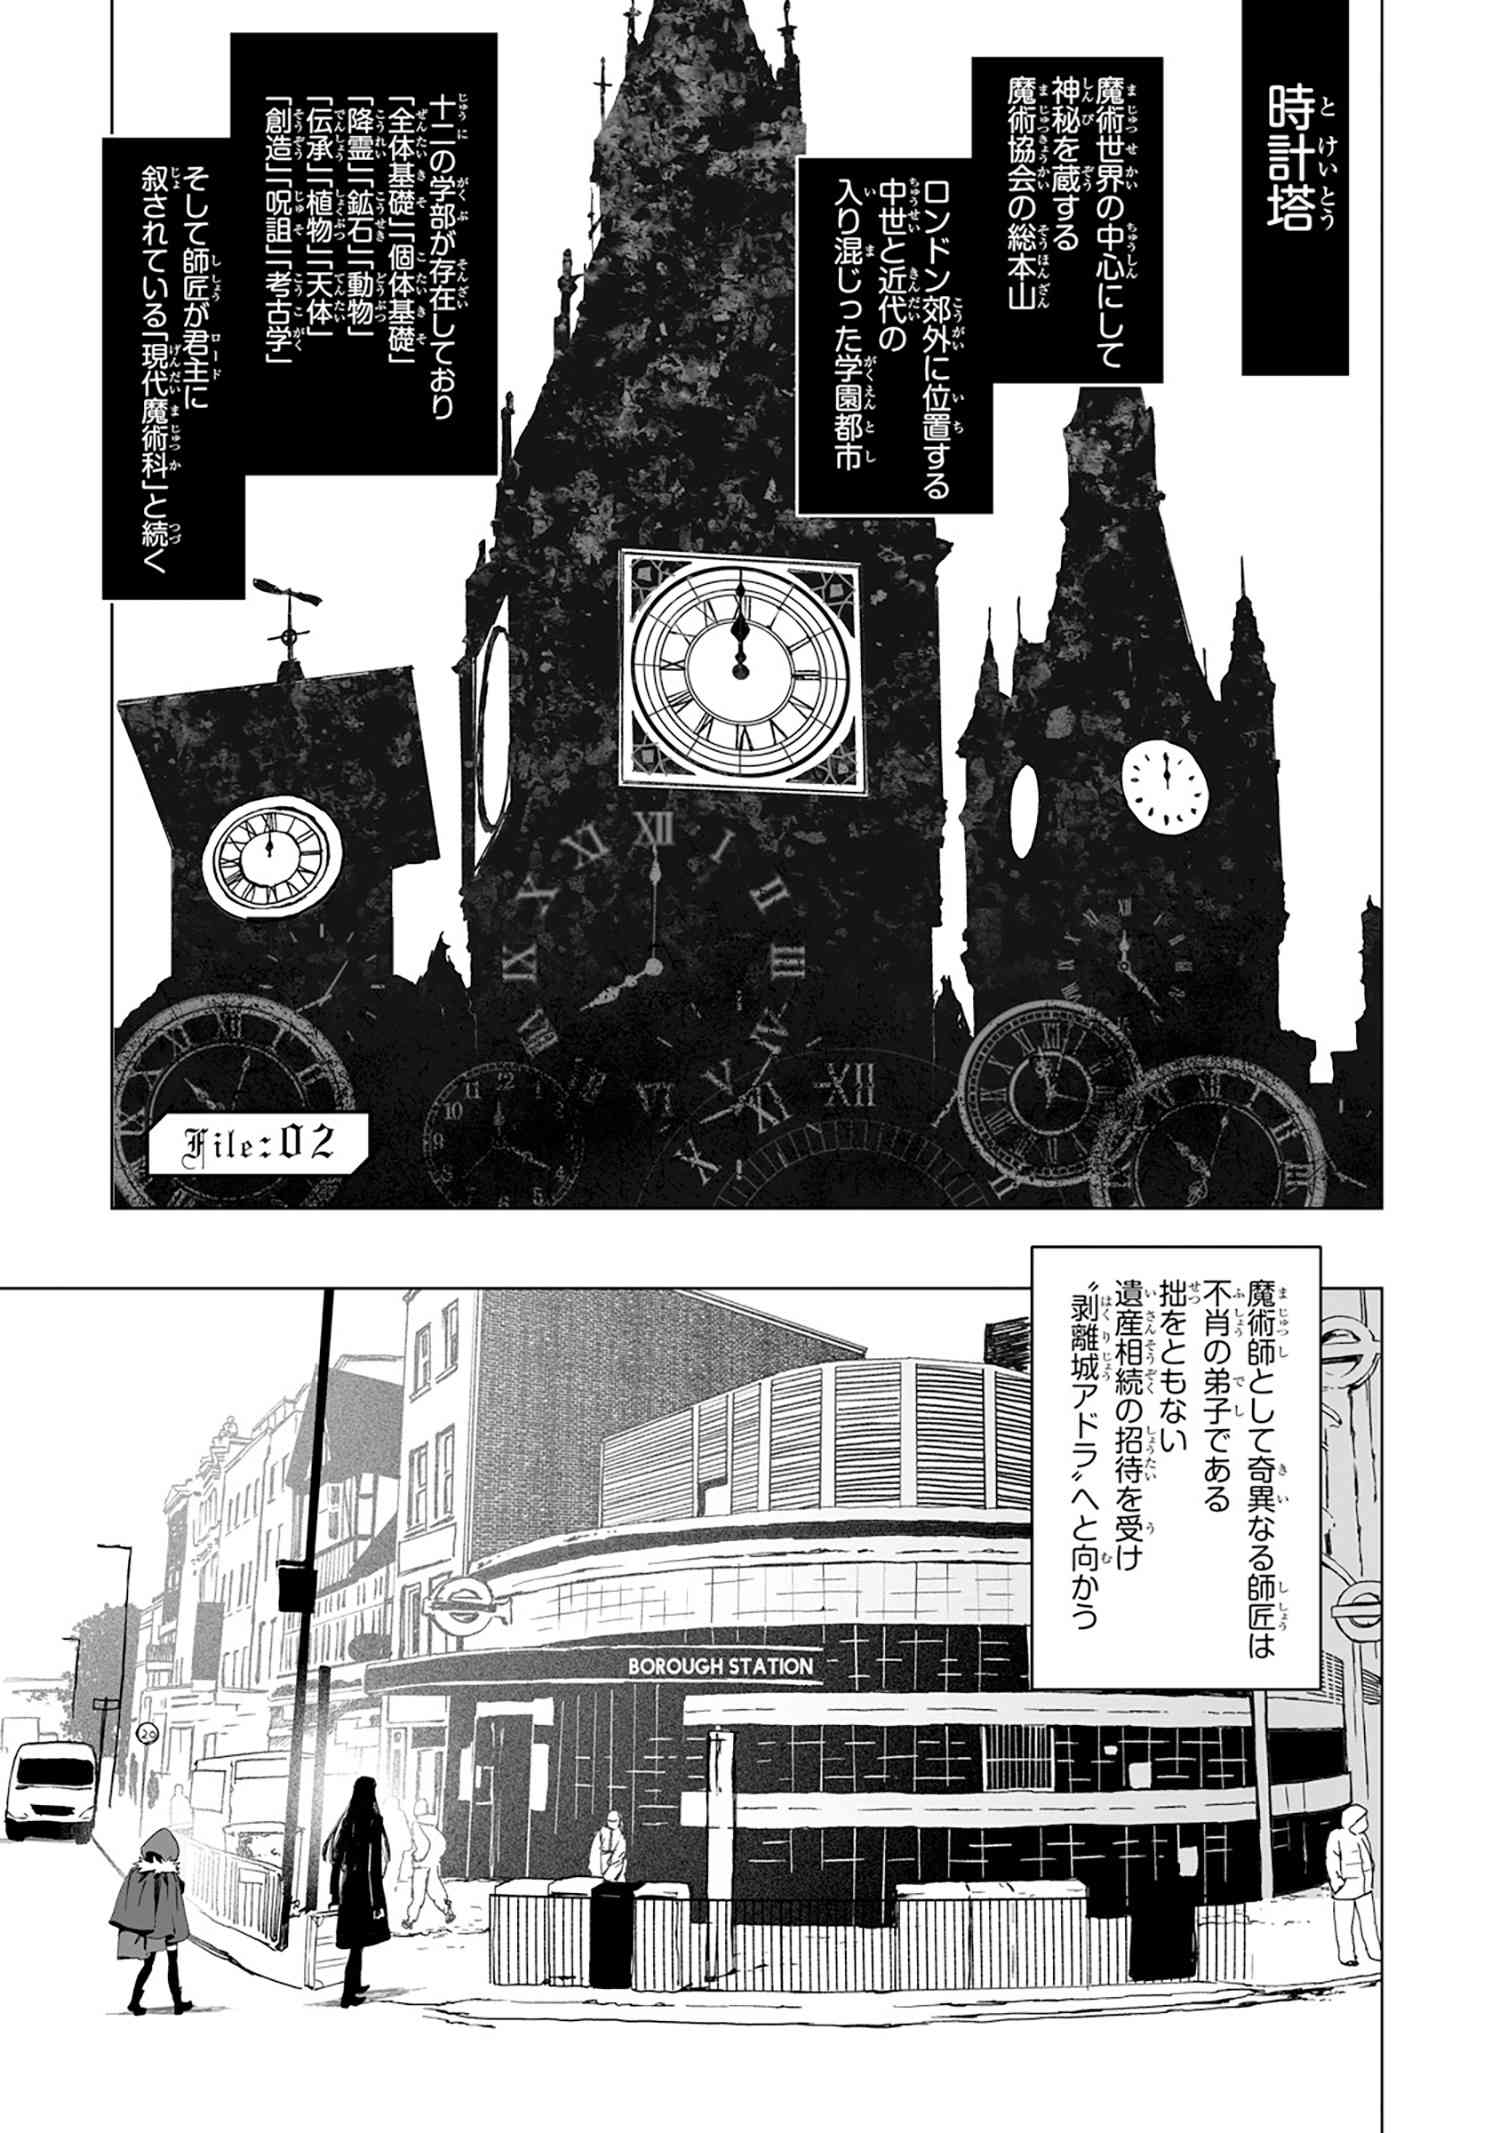 ロード エルメロイii世の事件簿 File 02 Type Moonコミックエース 無料で漫画が読めるオンラインマガジン